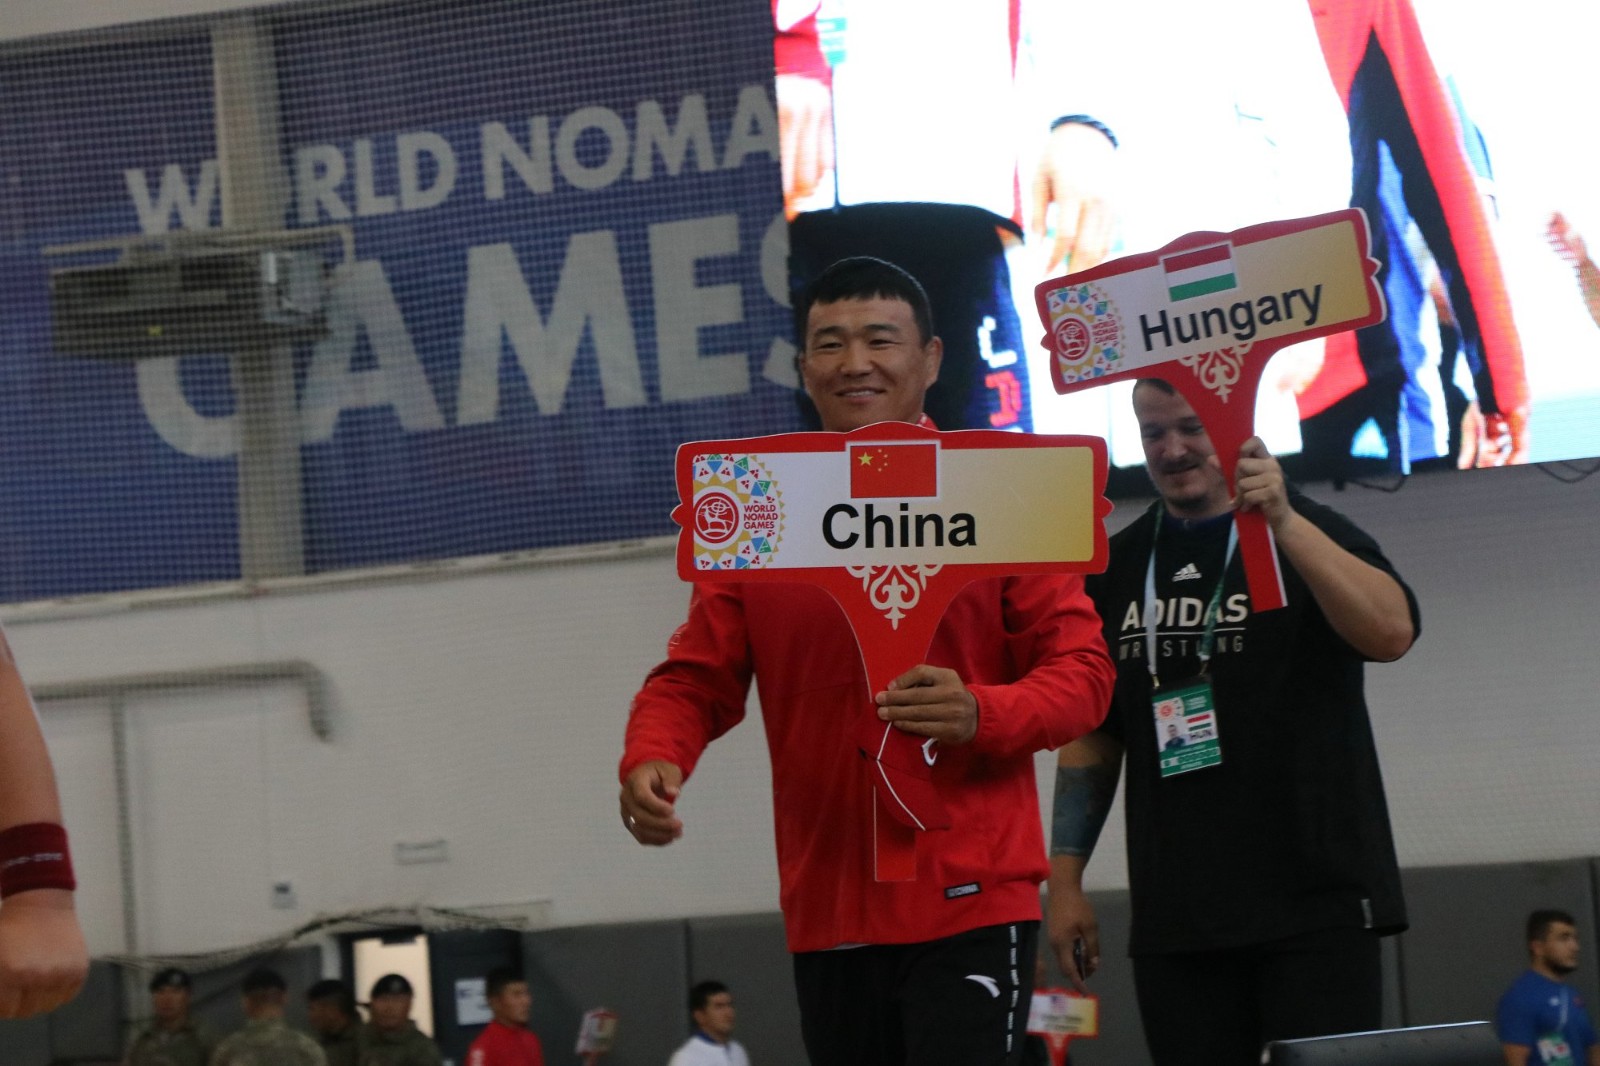 По итогам Всемирных игр кочевников Кыргызстан завоевал 40 золотых медалей и вышел на первое место в медальном зачете